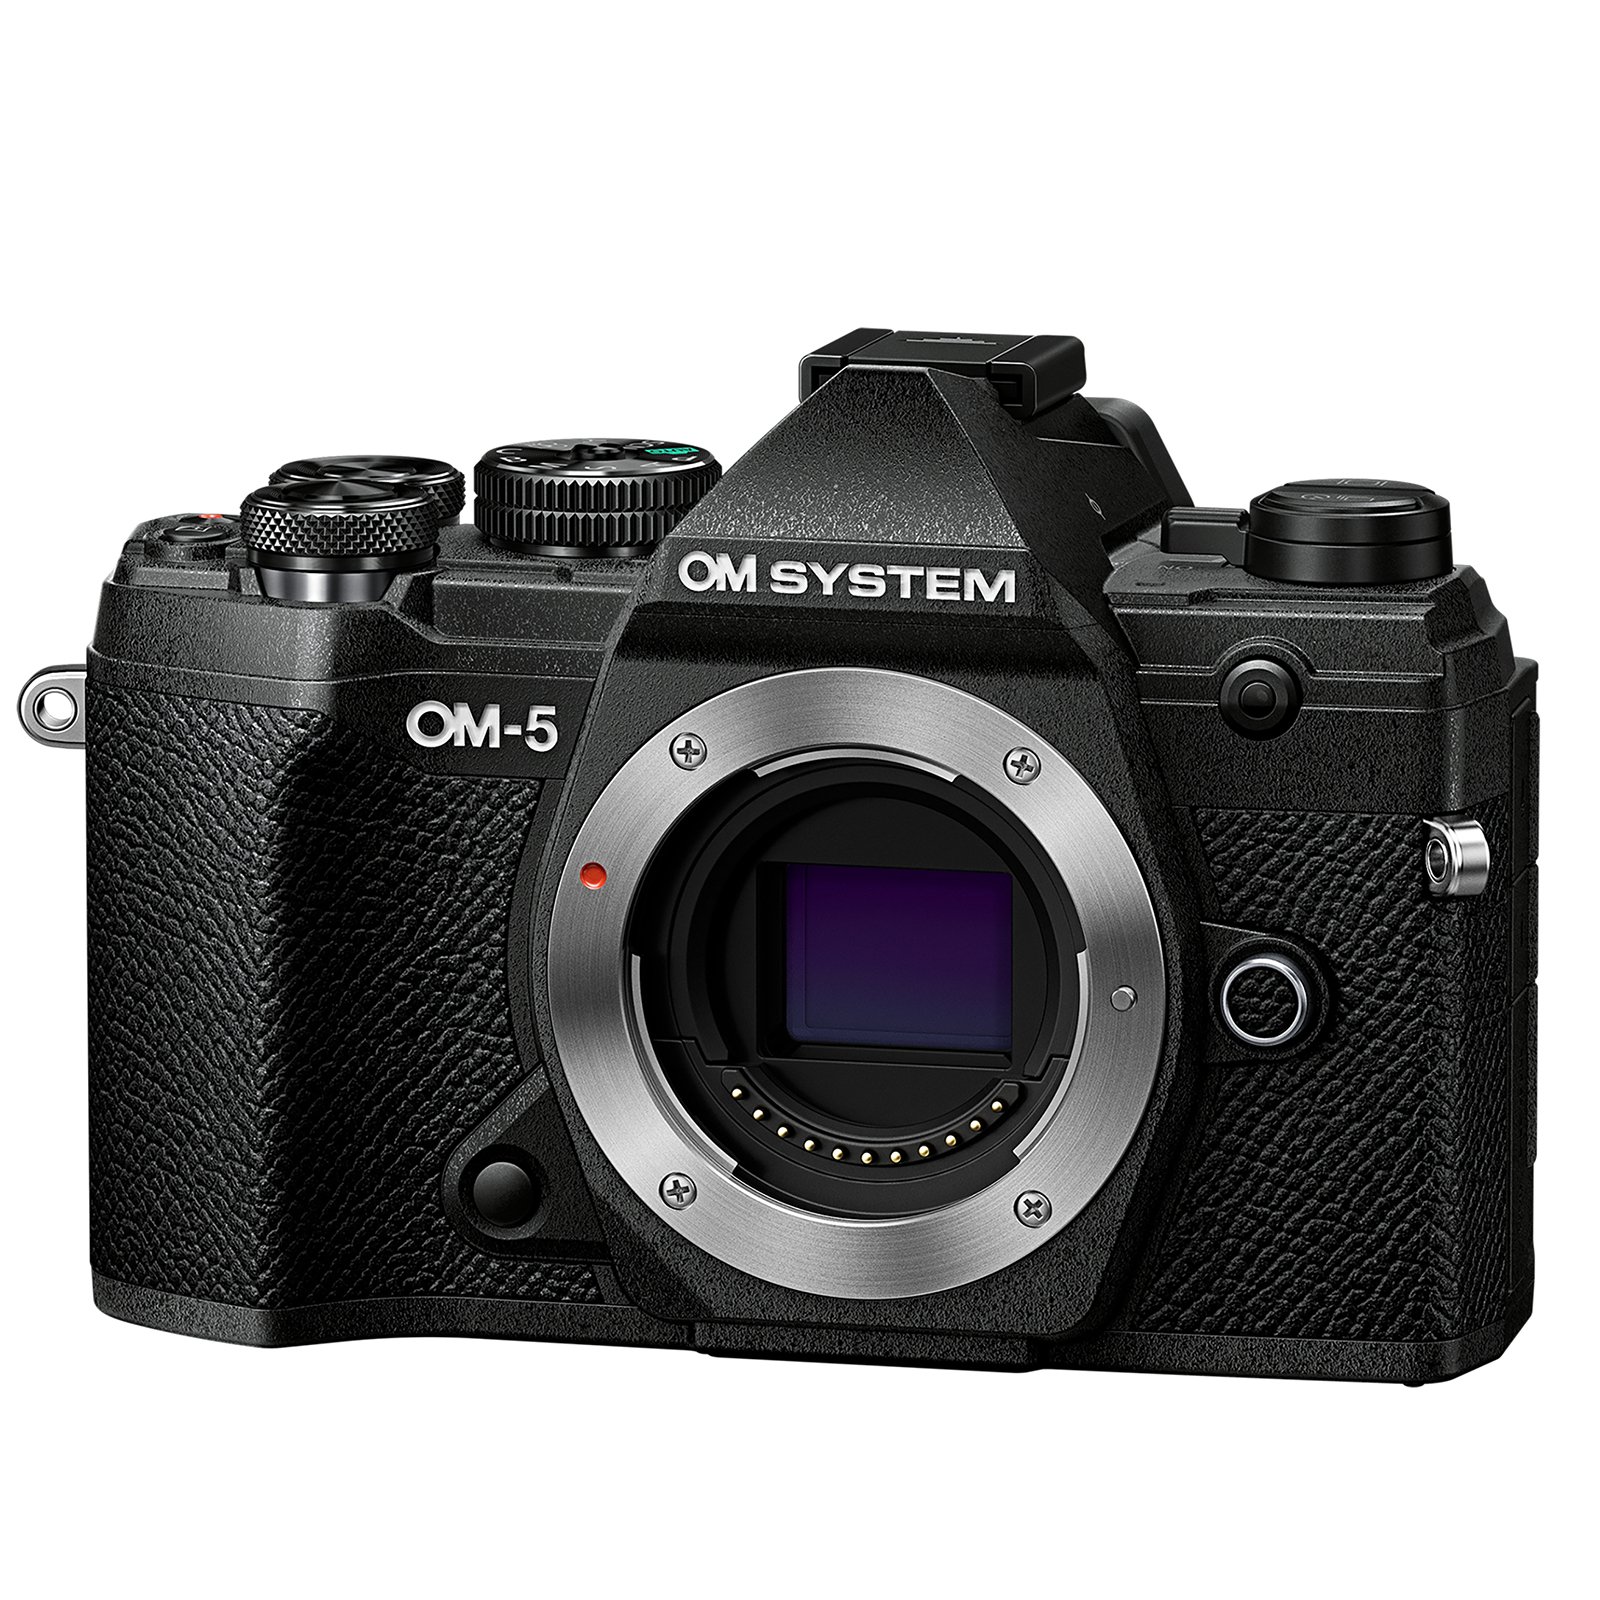 Image of OM SYSTEM OM5 Digital Camera Body Black